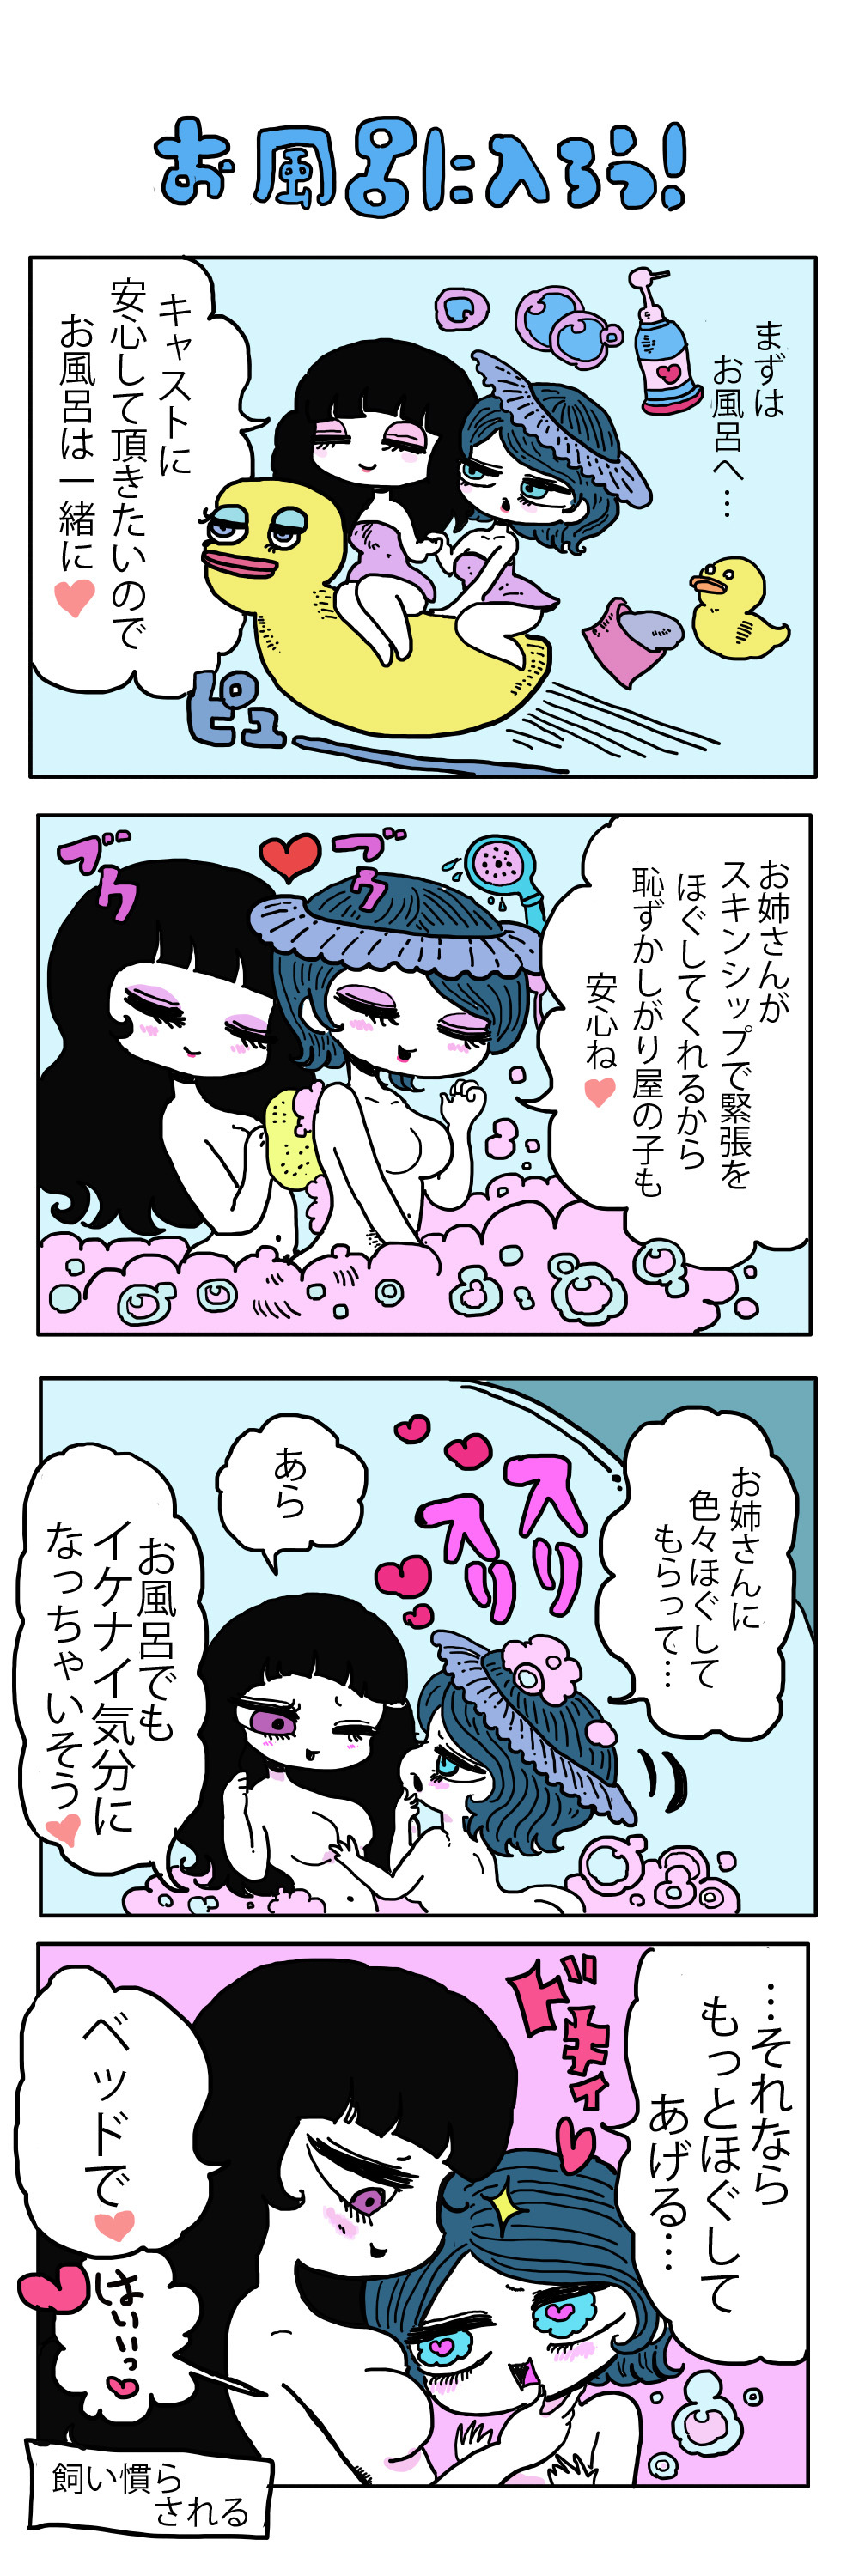 レズビアン東京 漫画1